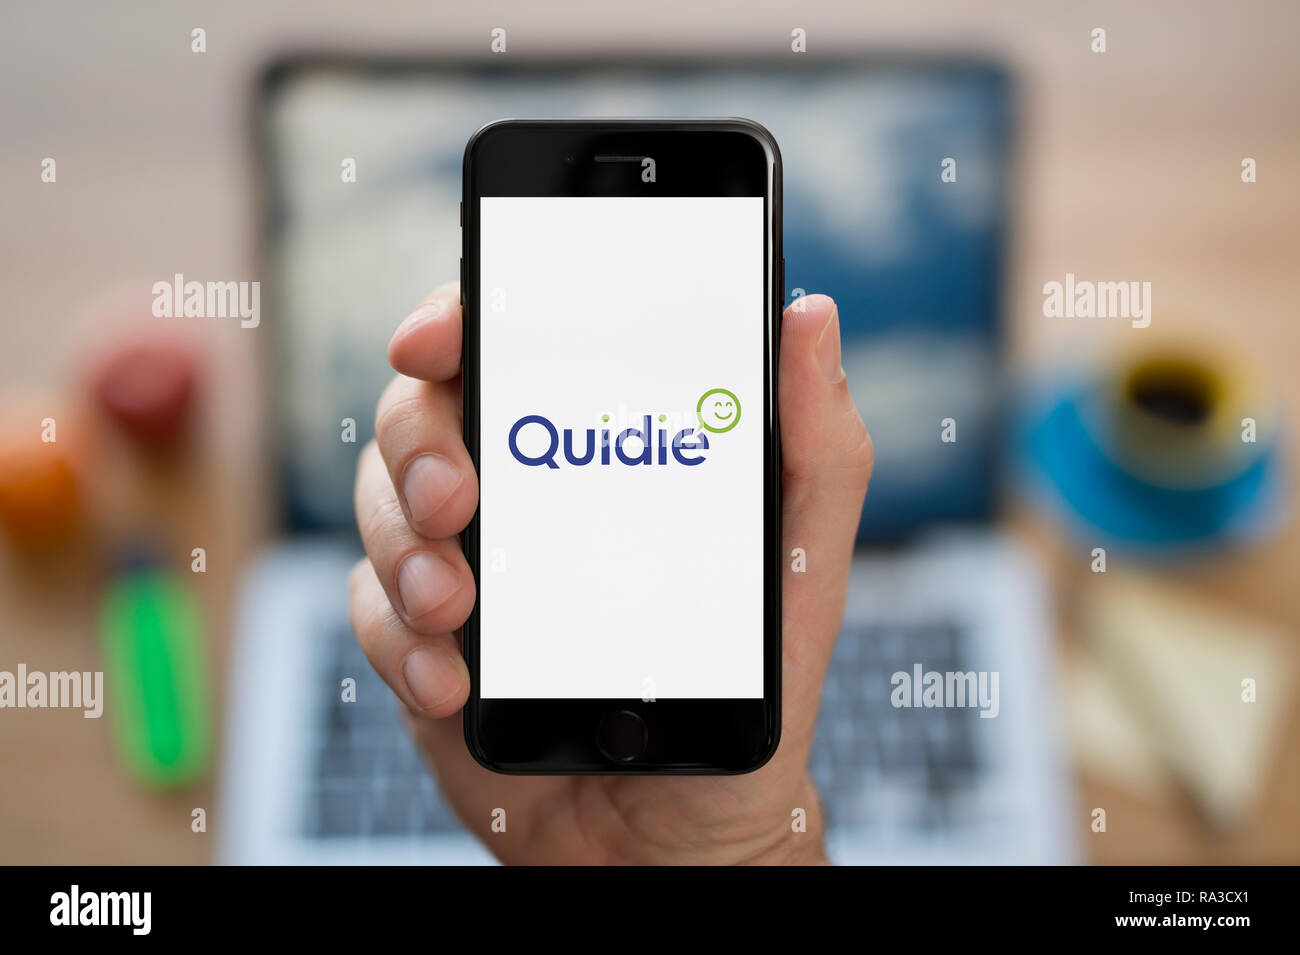 Un uomo guarda al suo iPhone che visualizza il logo Quidie (solo uso editoriale). Foto Stock